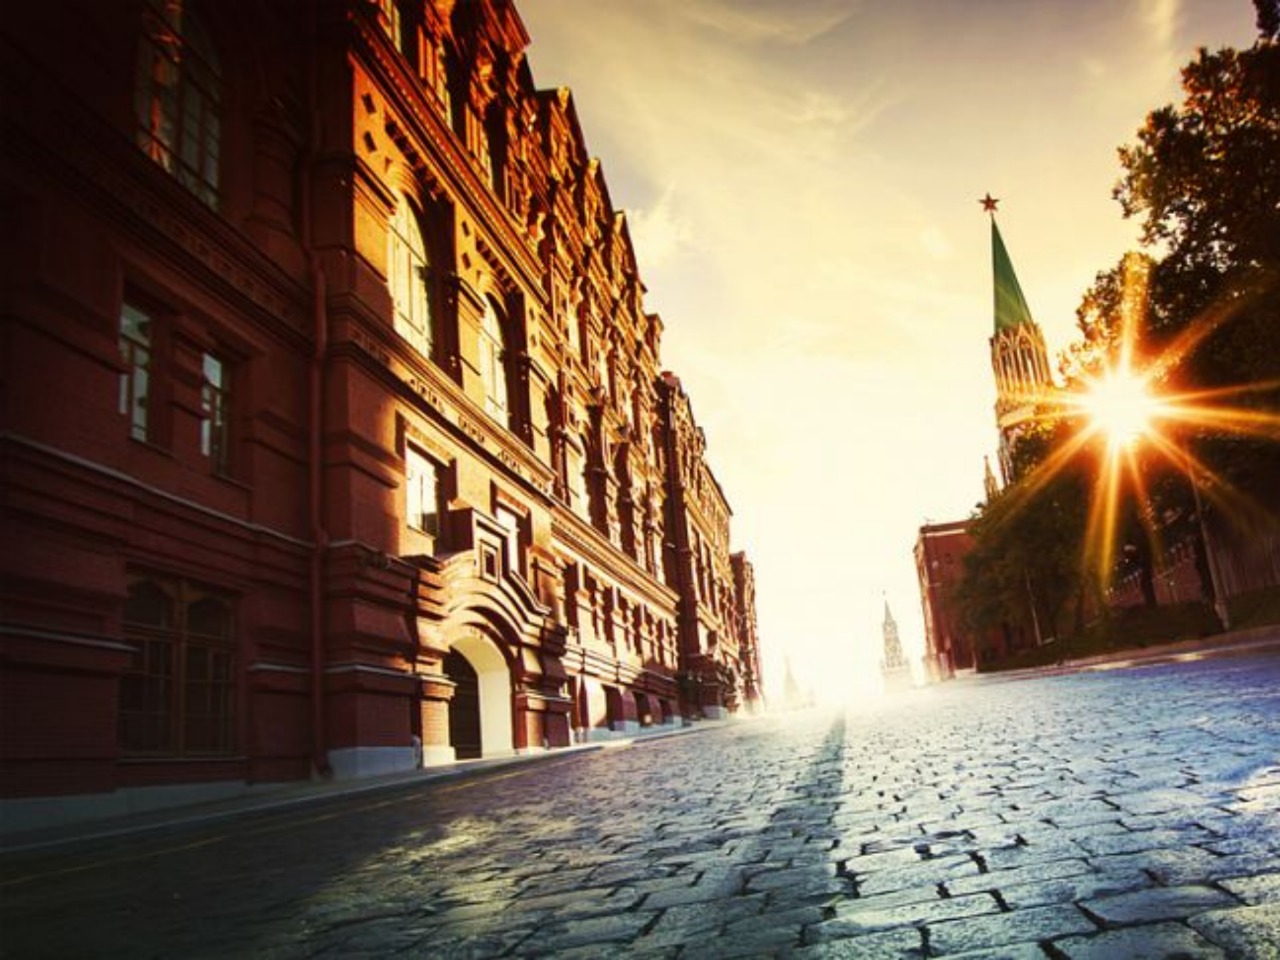 Москва мистическая | Цена 3750₽, отзывы, описание экскурсии